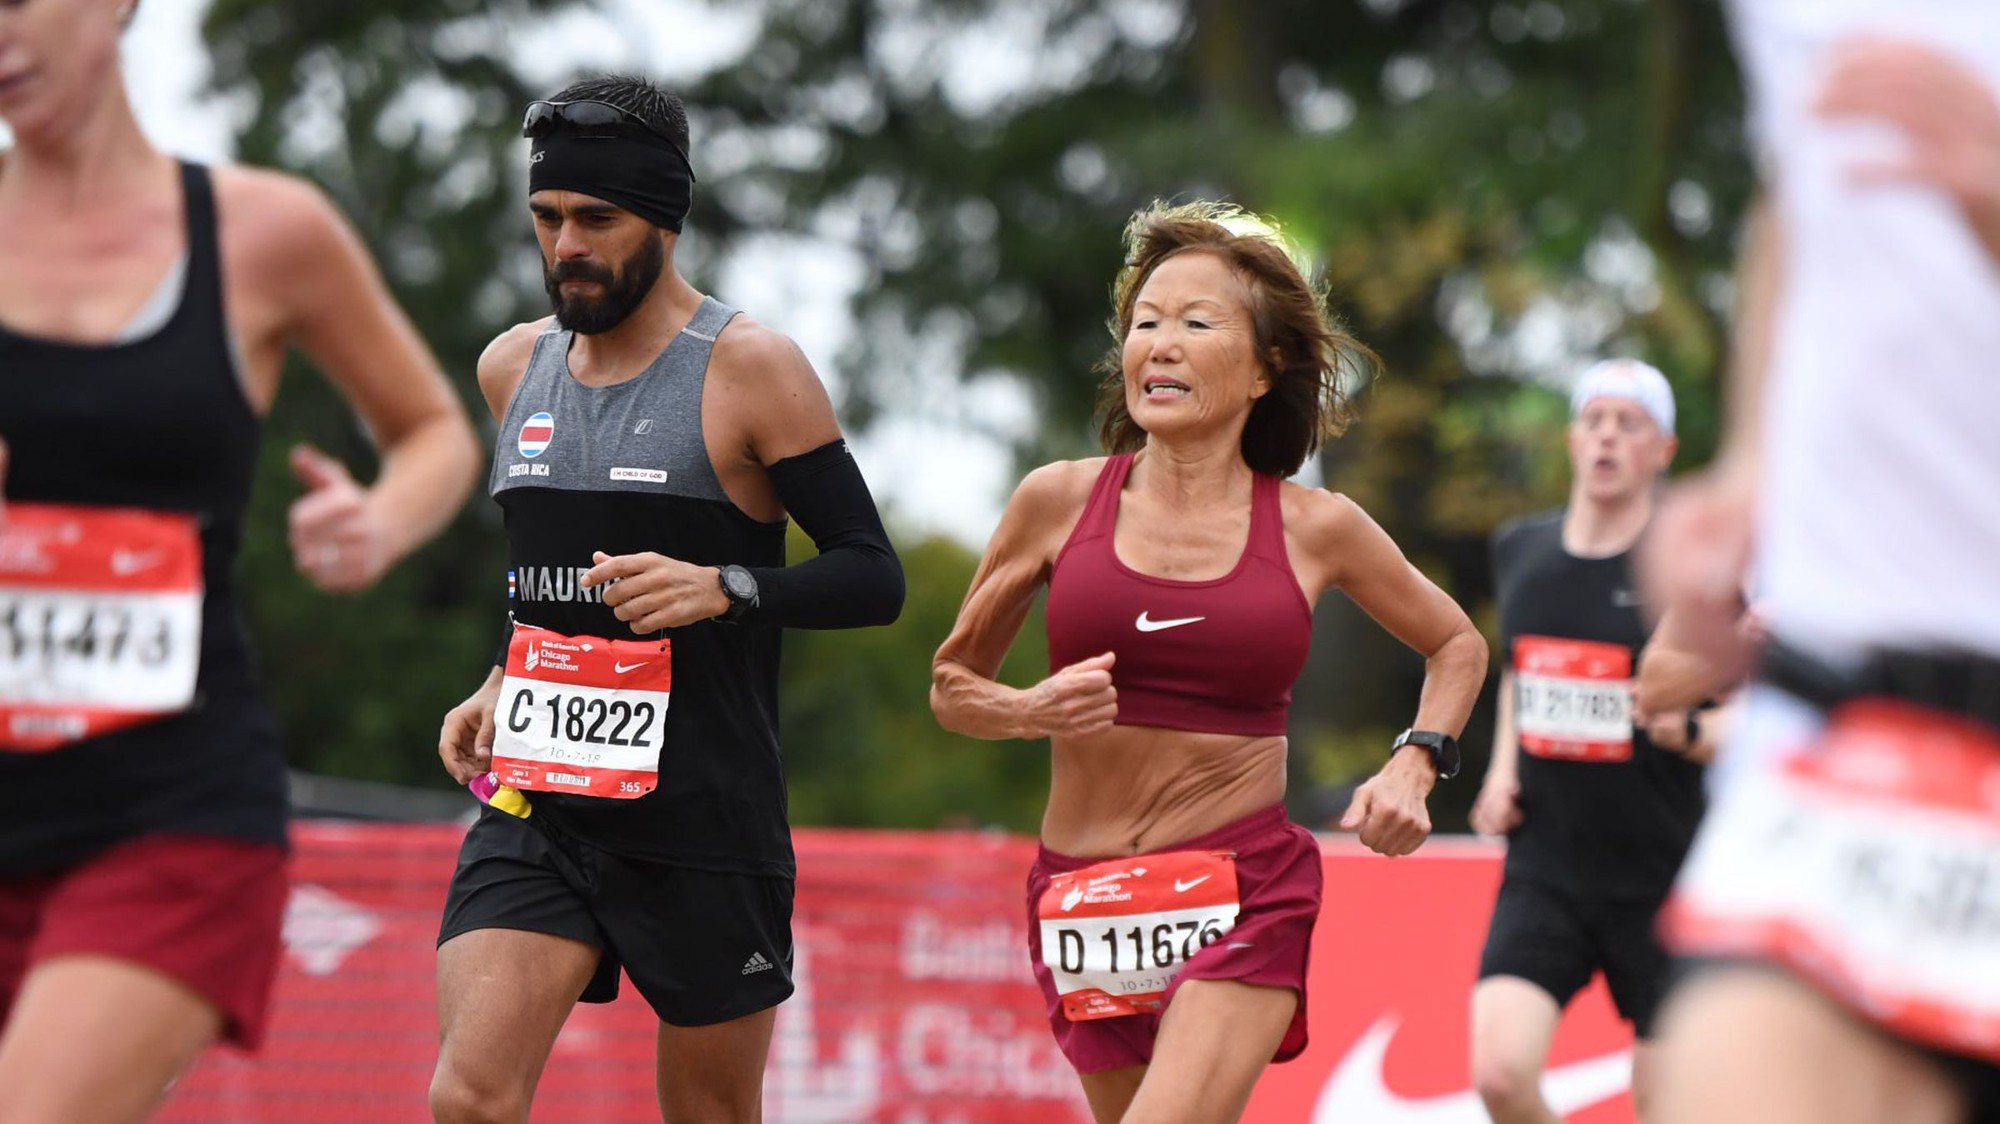 Cụ bà 70 tuổi phá kỷ lục thế giới ở nội dung marathon bằng thành tích đáng nể phục